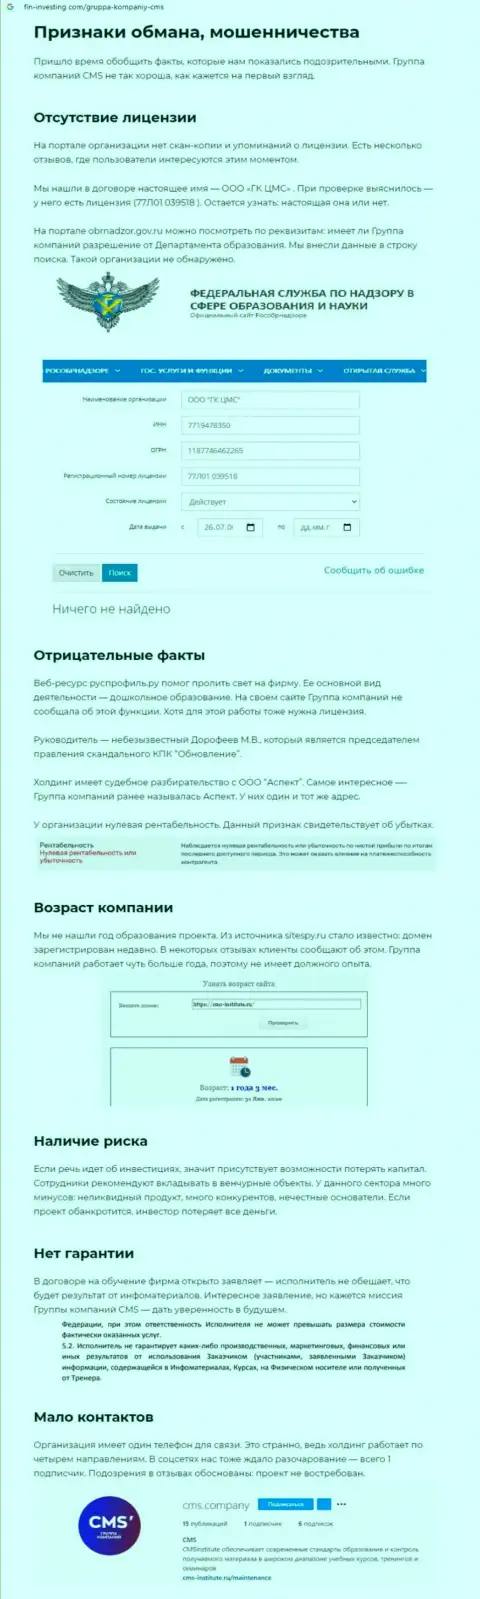 Обзорная публикация об незаконных действиях махинаторов CMS-Institute Ru, будьте очень внимательны !!! ОБМАН !!!